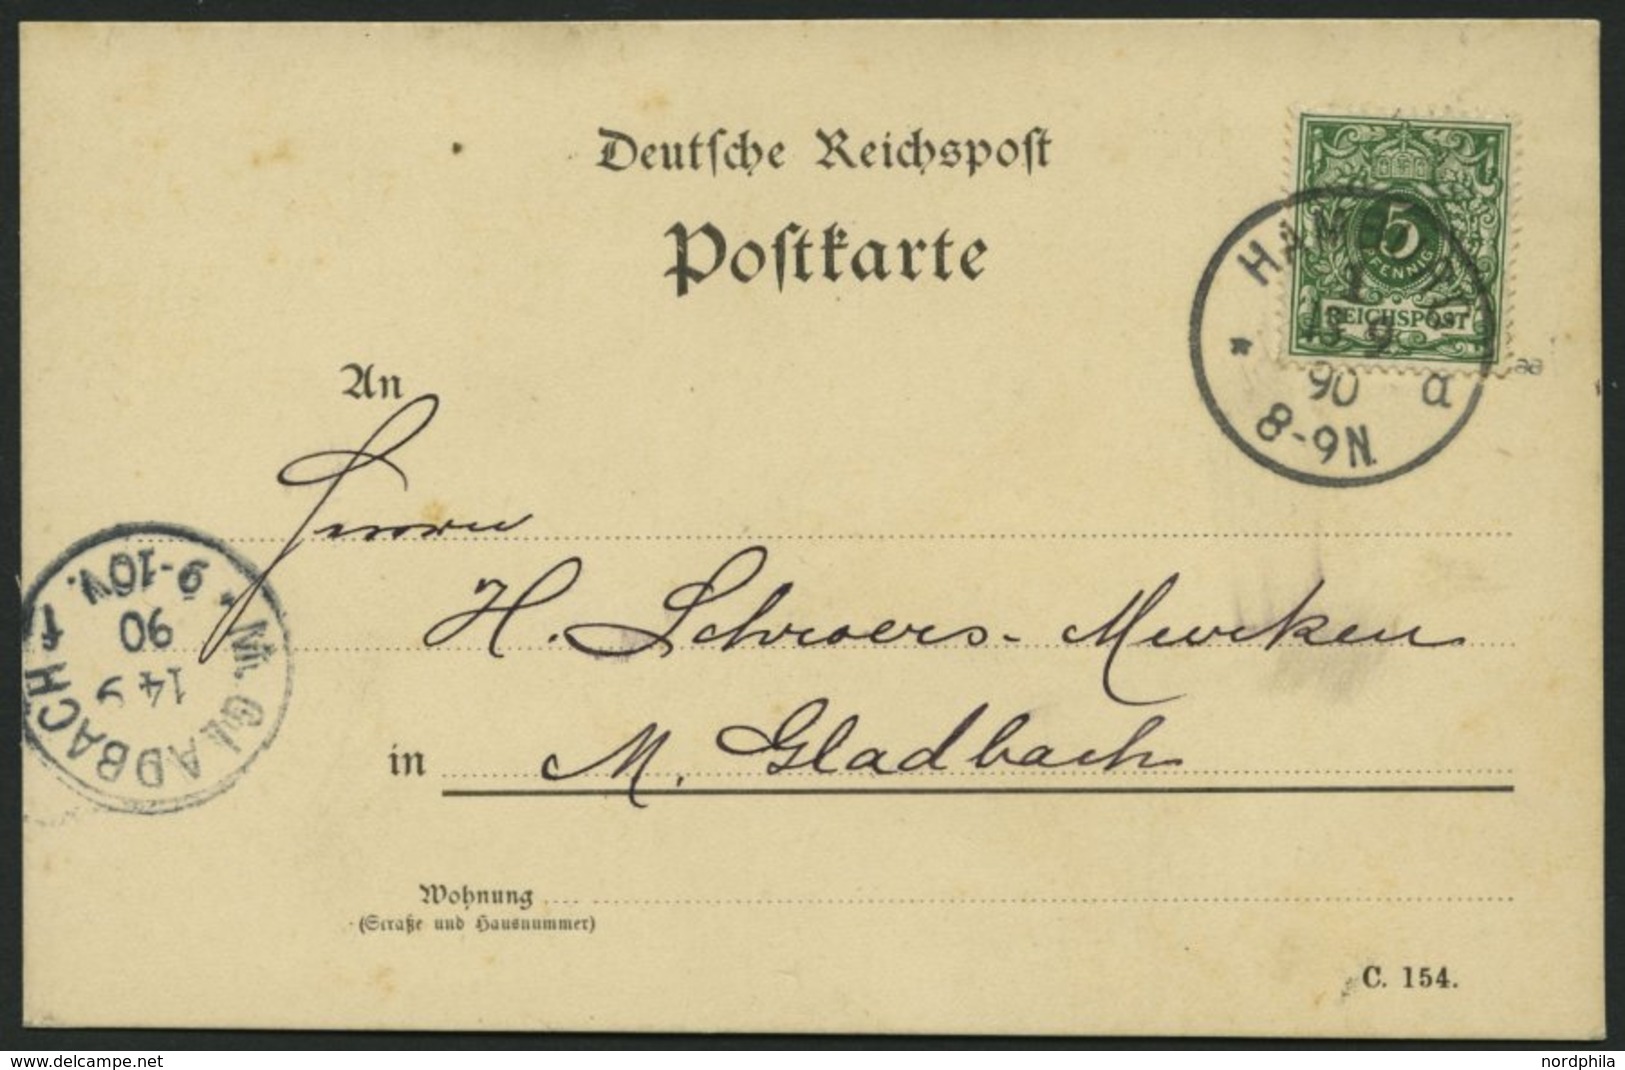 Dt. Reich 46aa BRIEF, 1890, 5 Pf. Dunkelgrün, Prachtkarte Von HAMBURG Nach M. Gladbach, Gepr. Zenker - Used Stamps